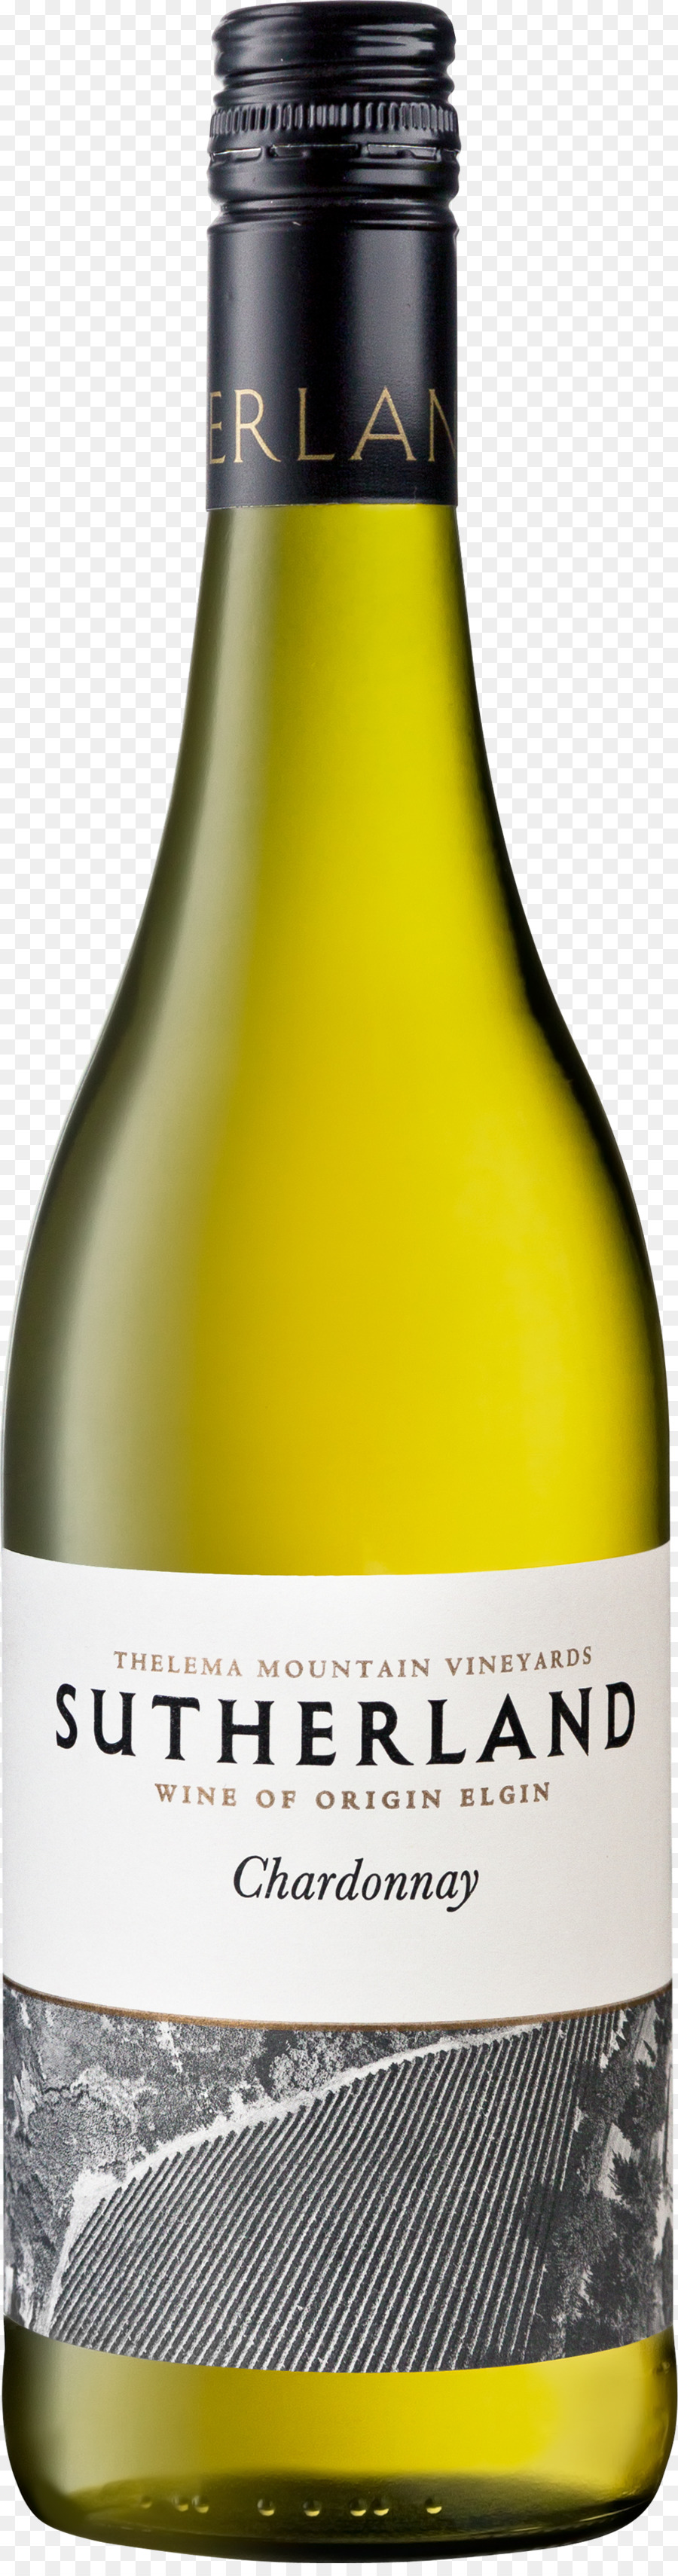 النبيذ الأبيض，بلان استرلينيا PNG